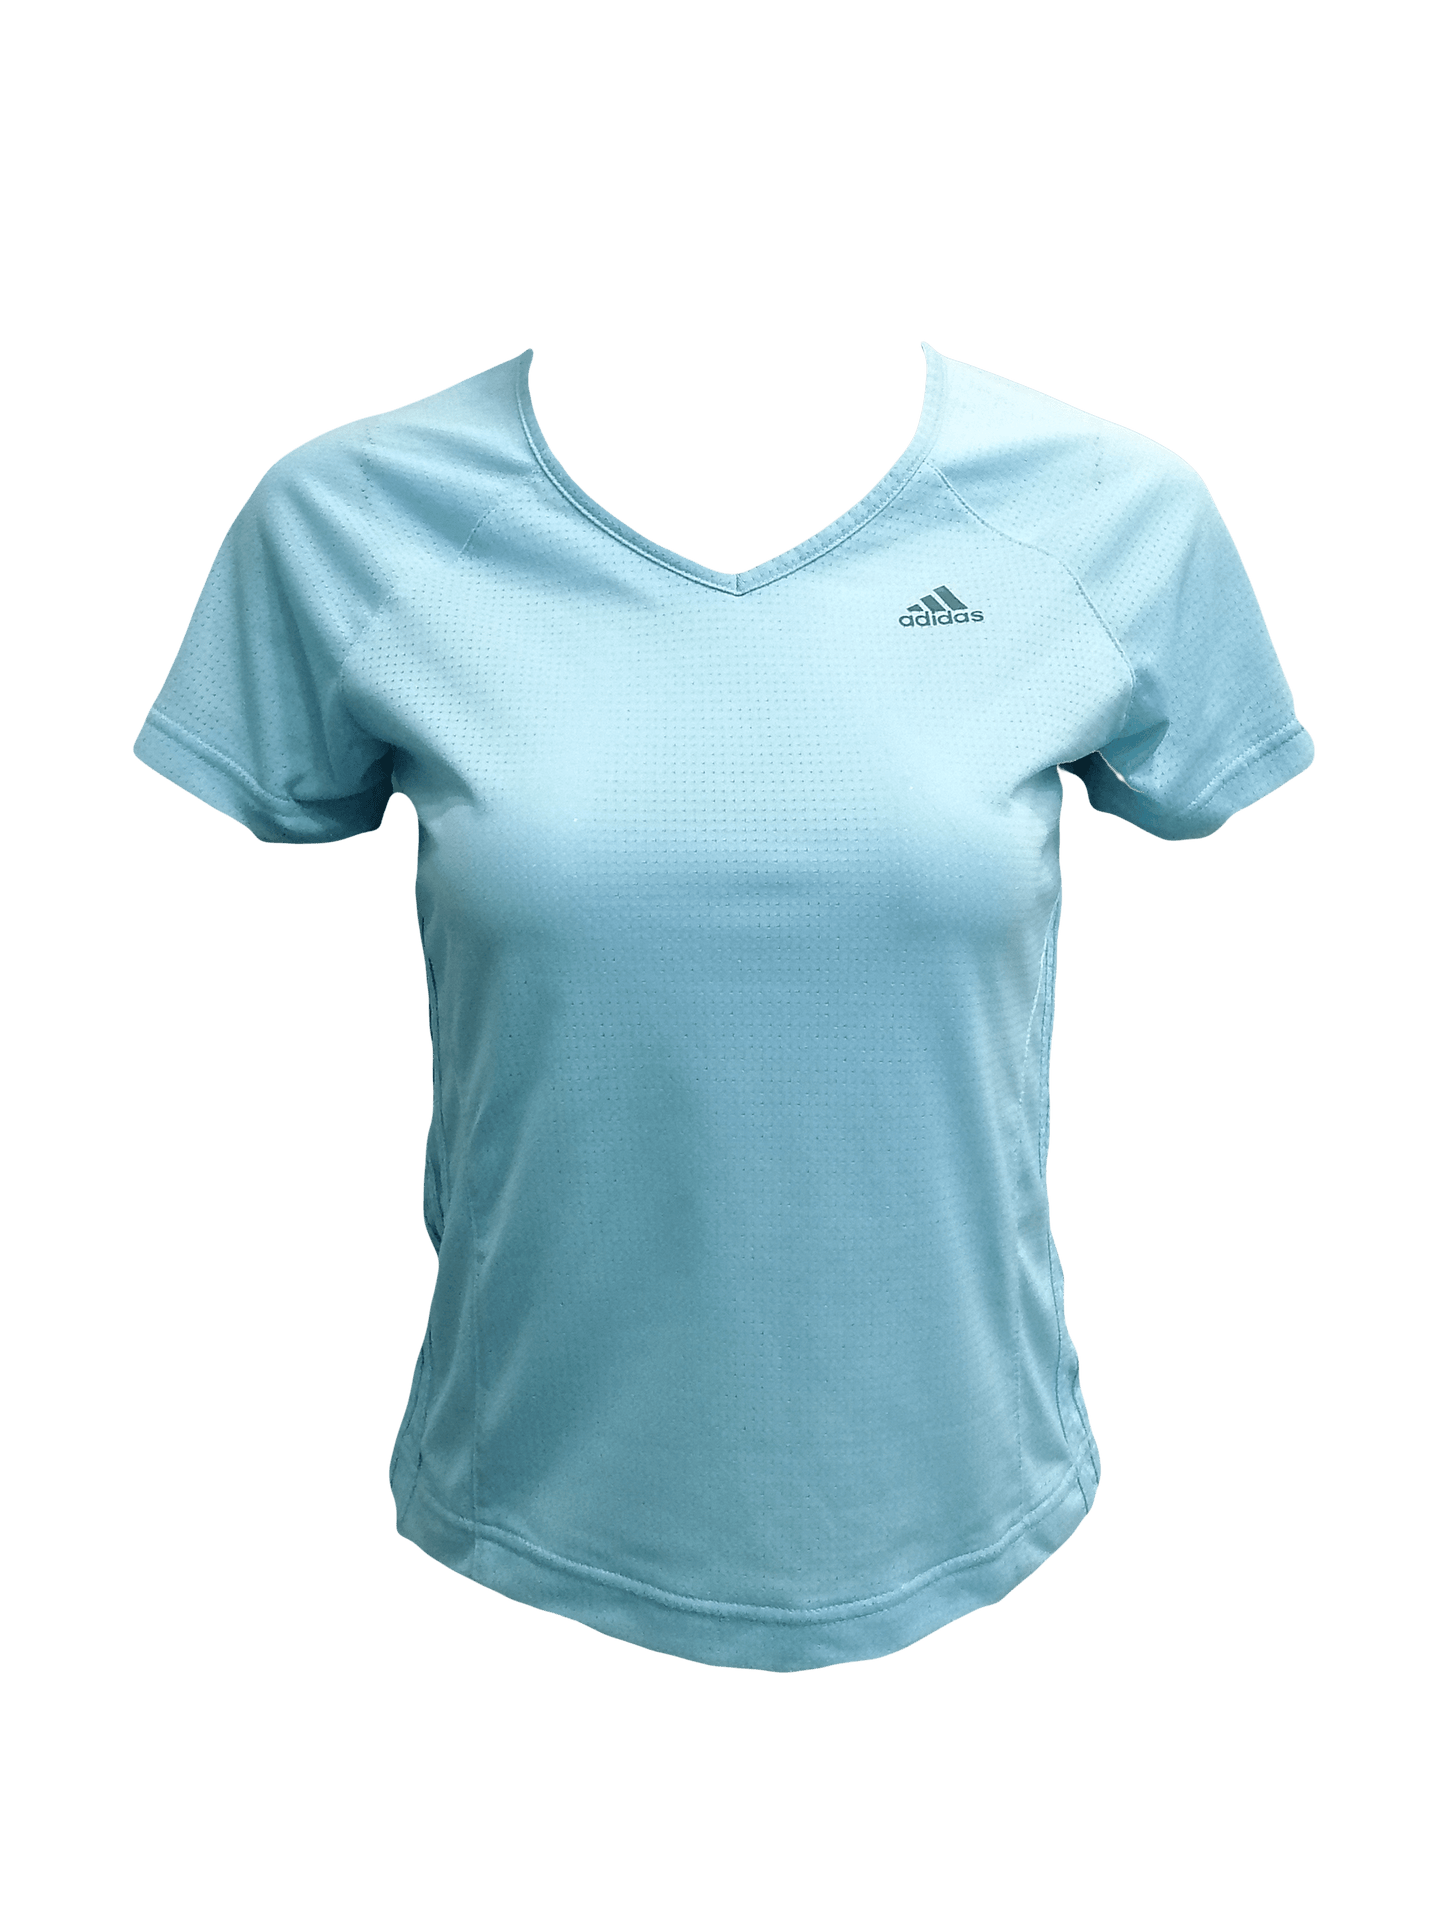 Adidas Womens sports Small / Sky Blue Dri-fit T-shirt